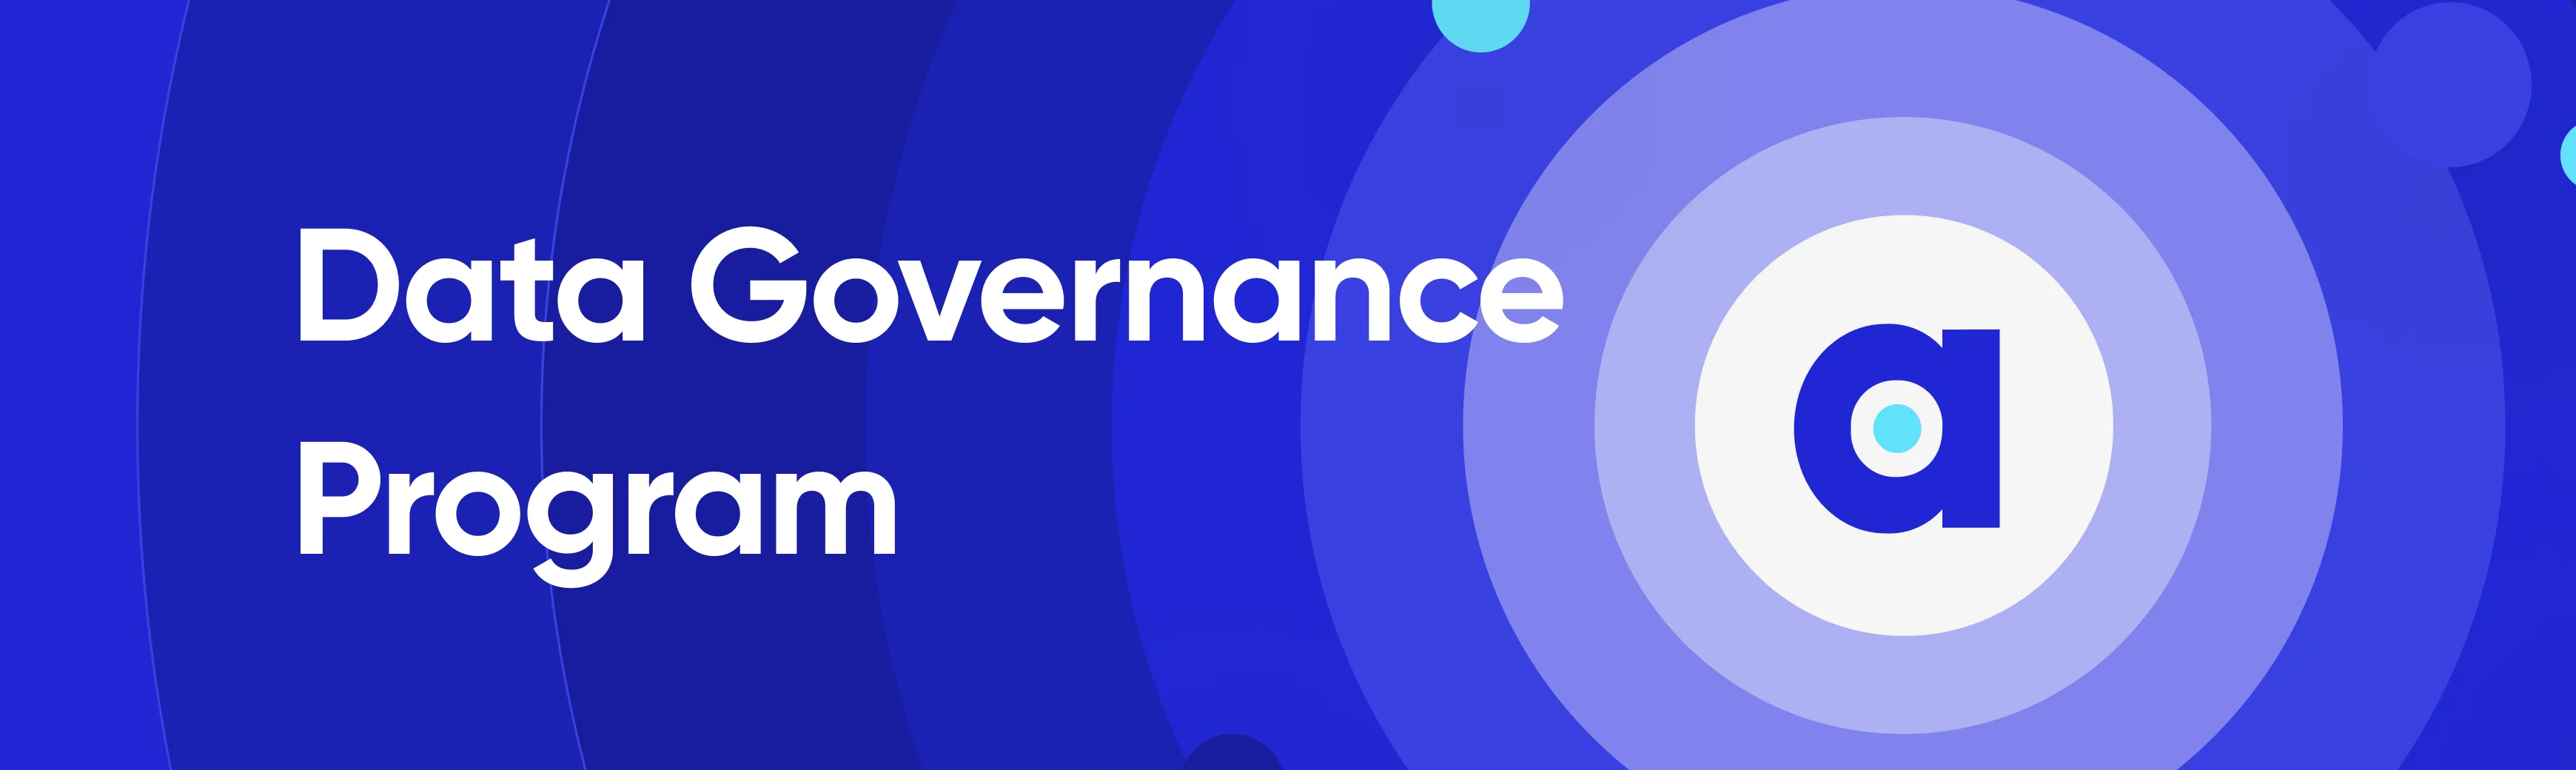 Data governance program